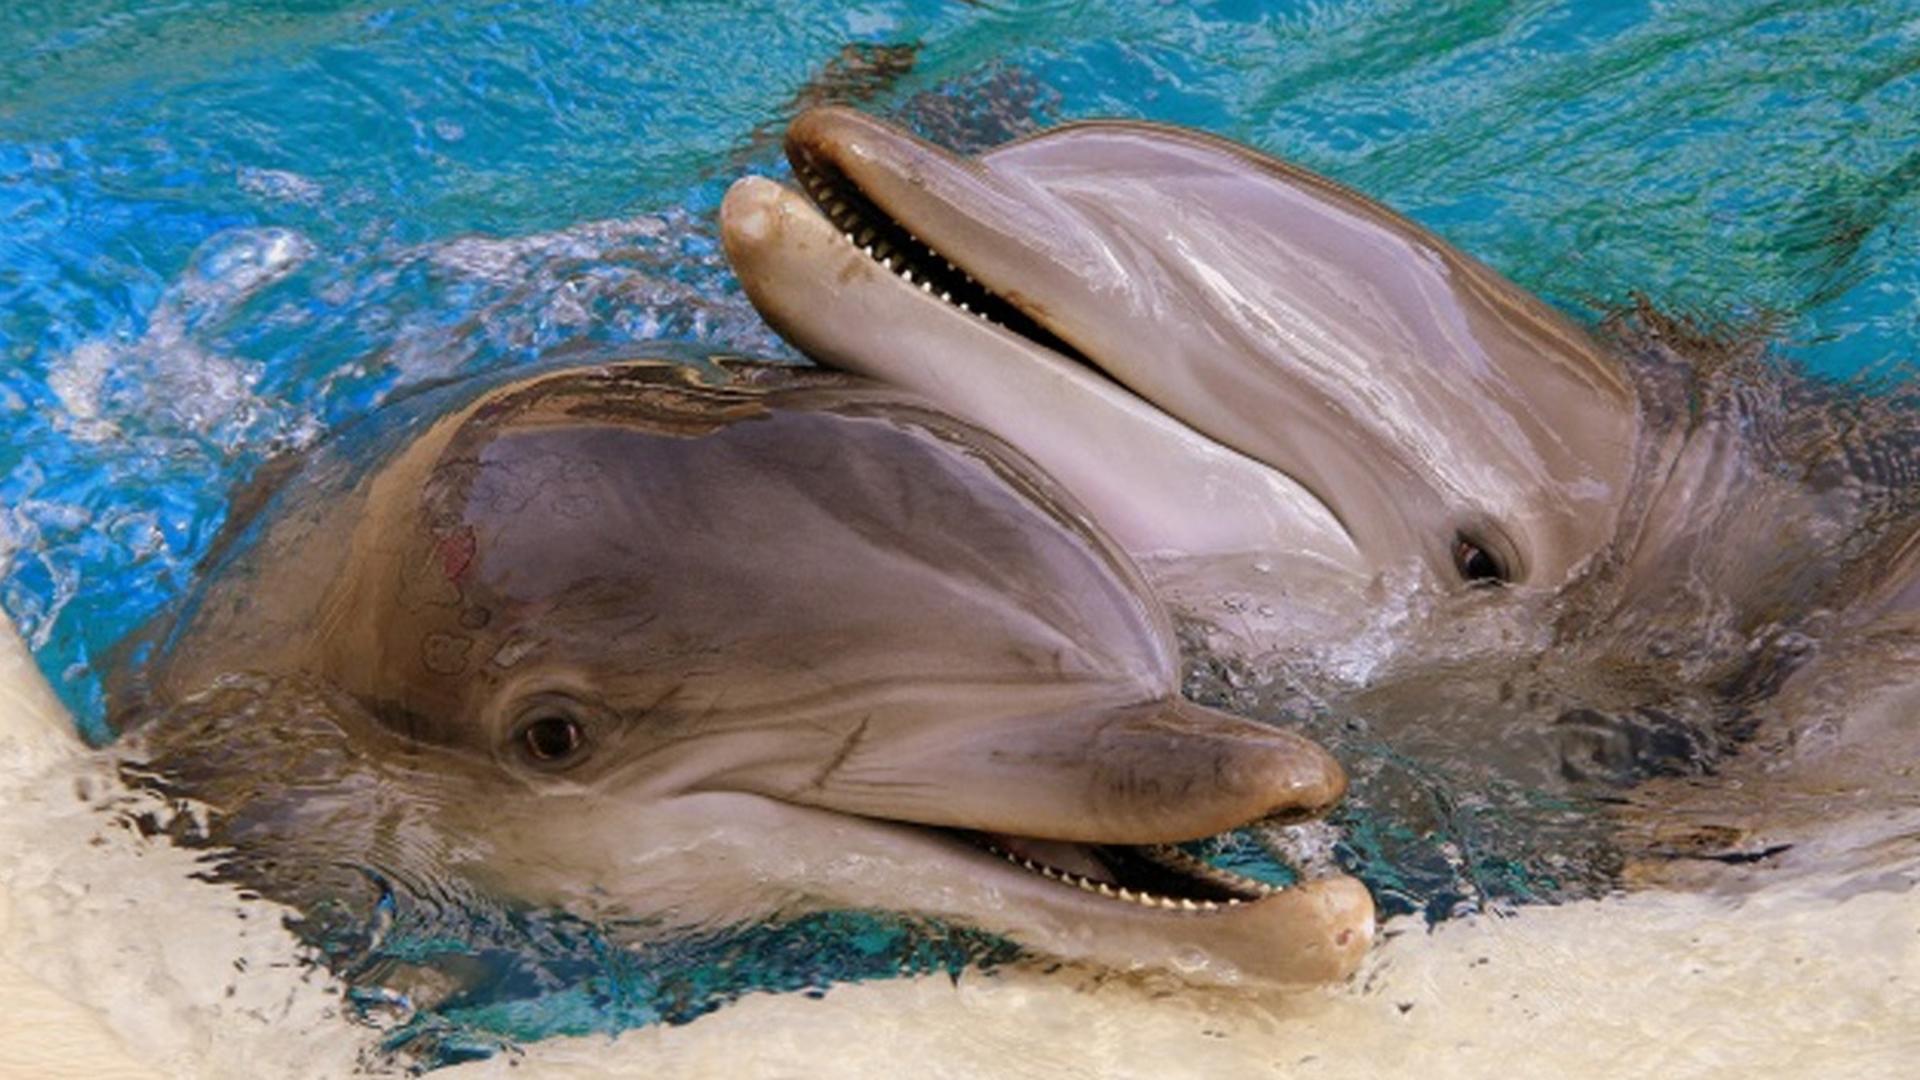 Исследование американских ученых показало, что у самок дельфинов есть клитор, позволяющий получать сексуальное удовольствие